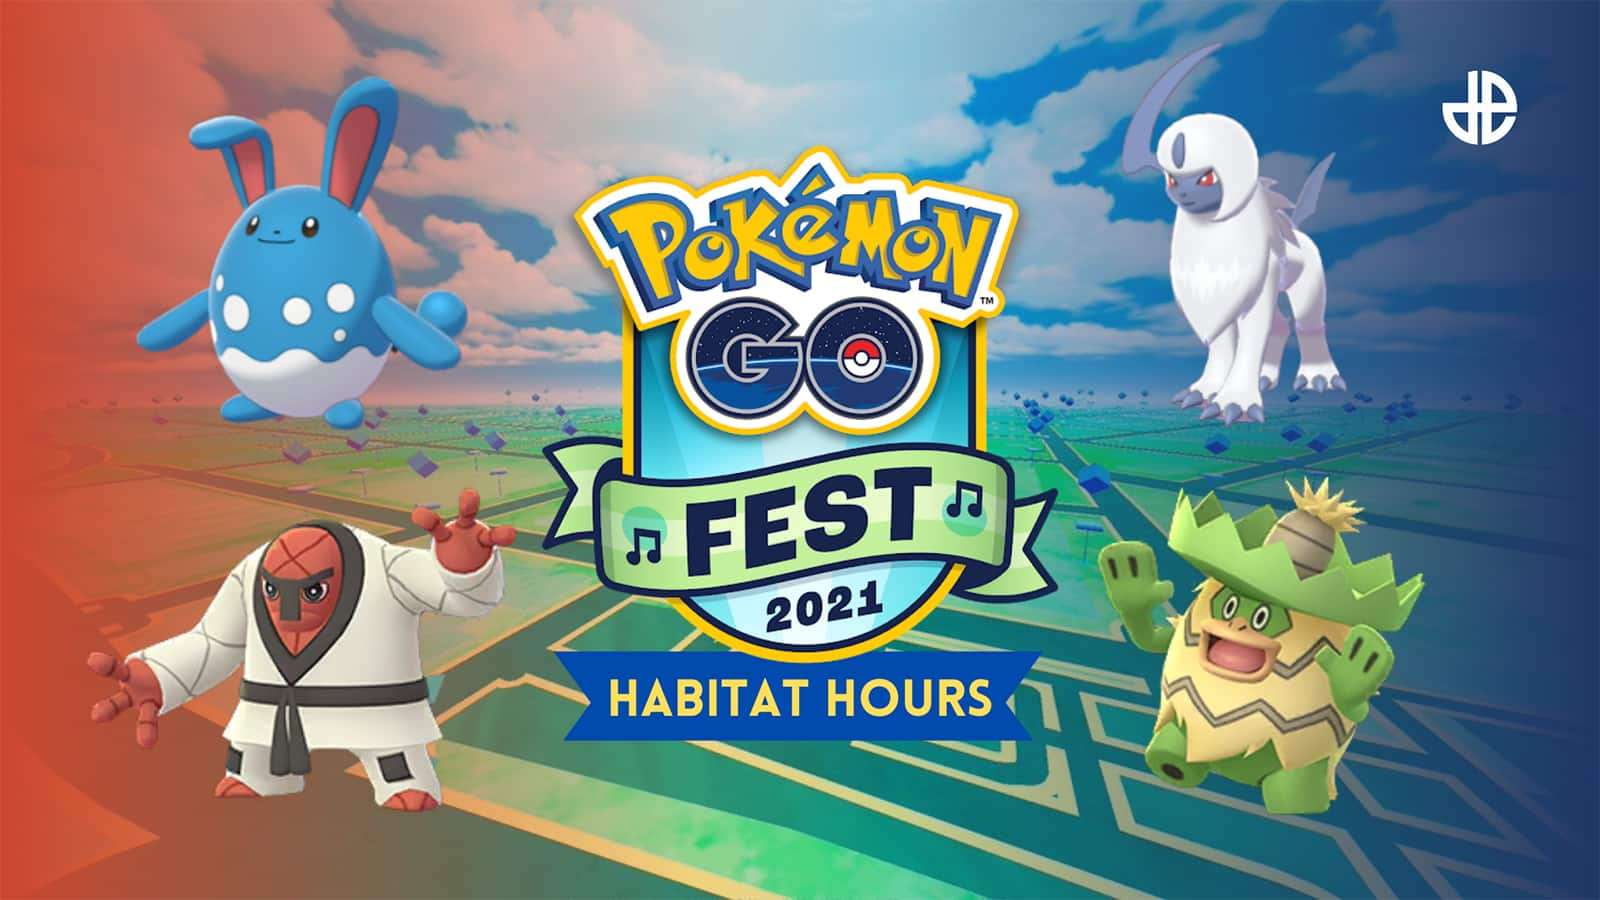 Pokemon Go Fest 2021 Habitat Hours